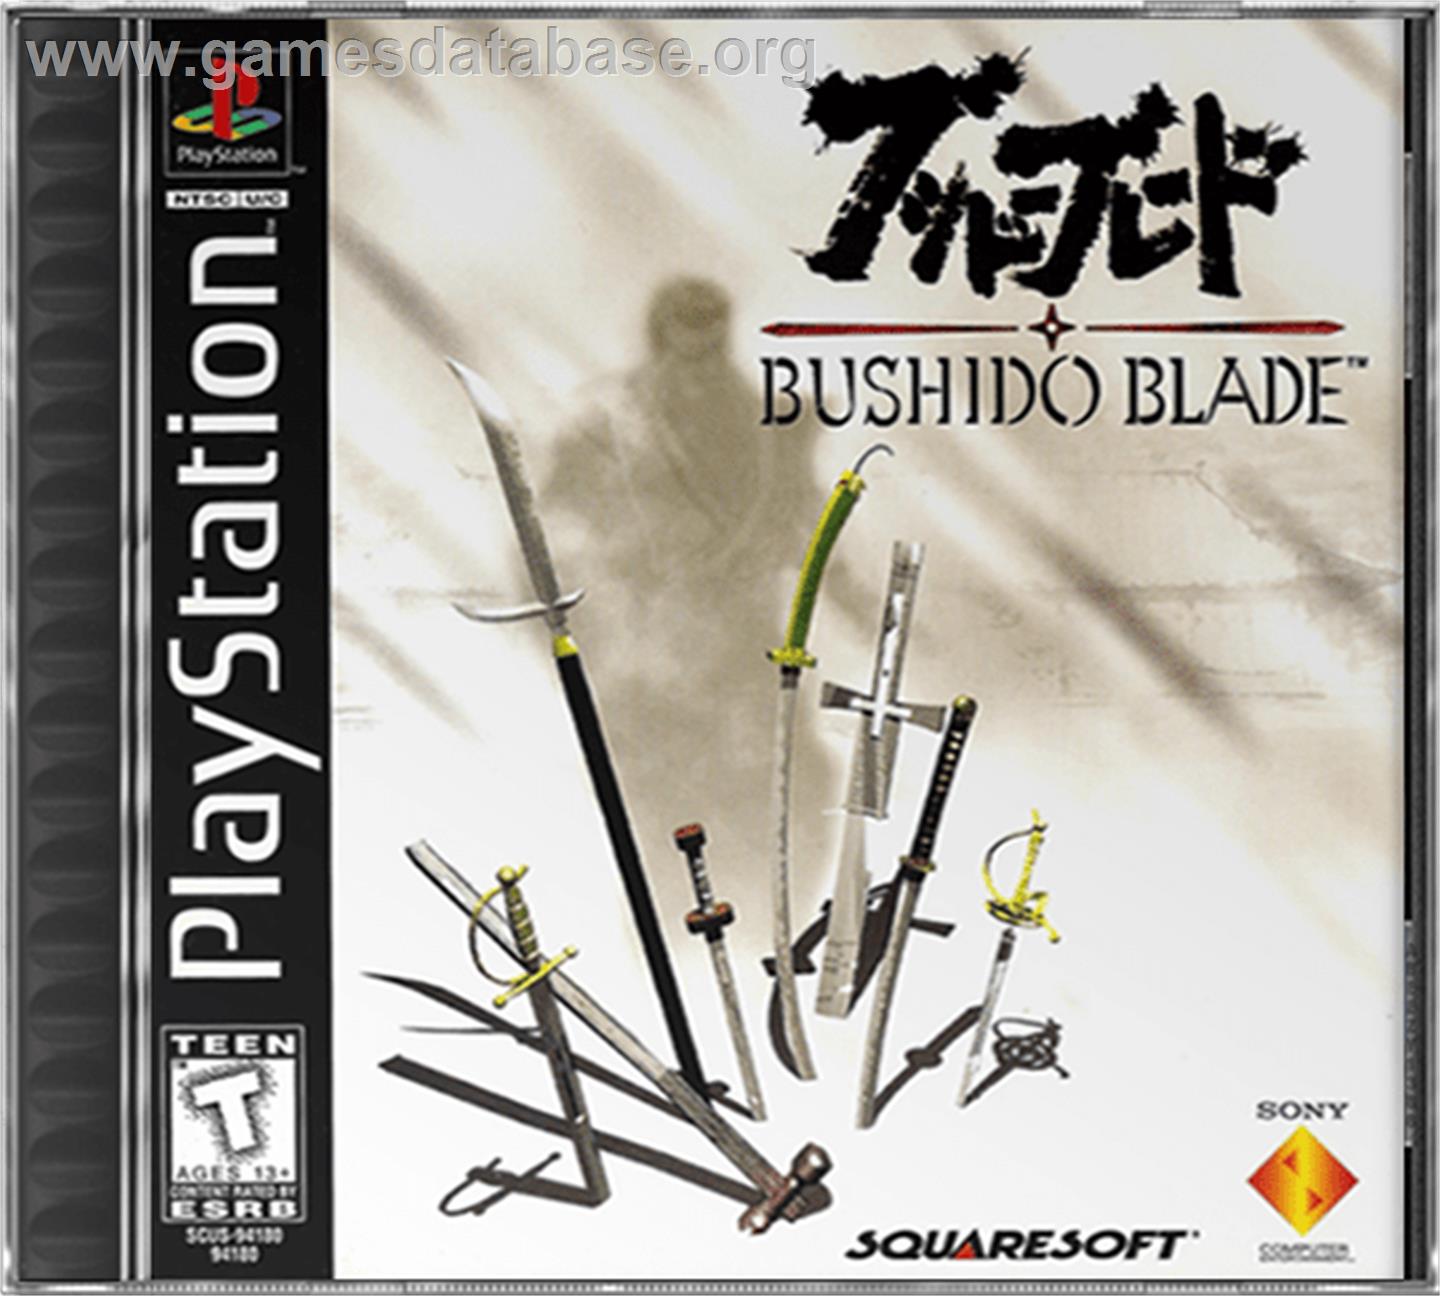 Bushido Blade - Sony Playstation - Artwork - Box